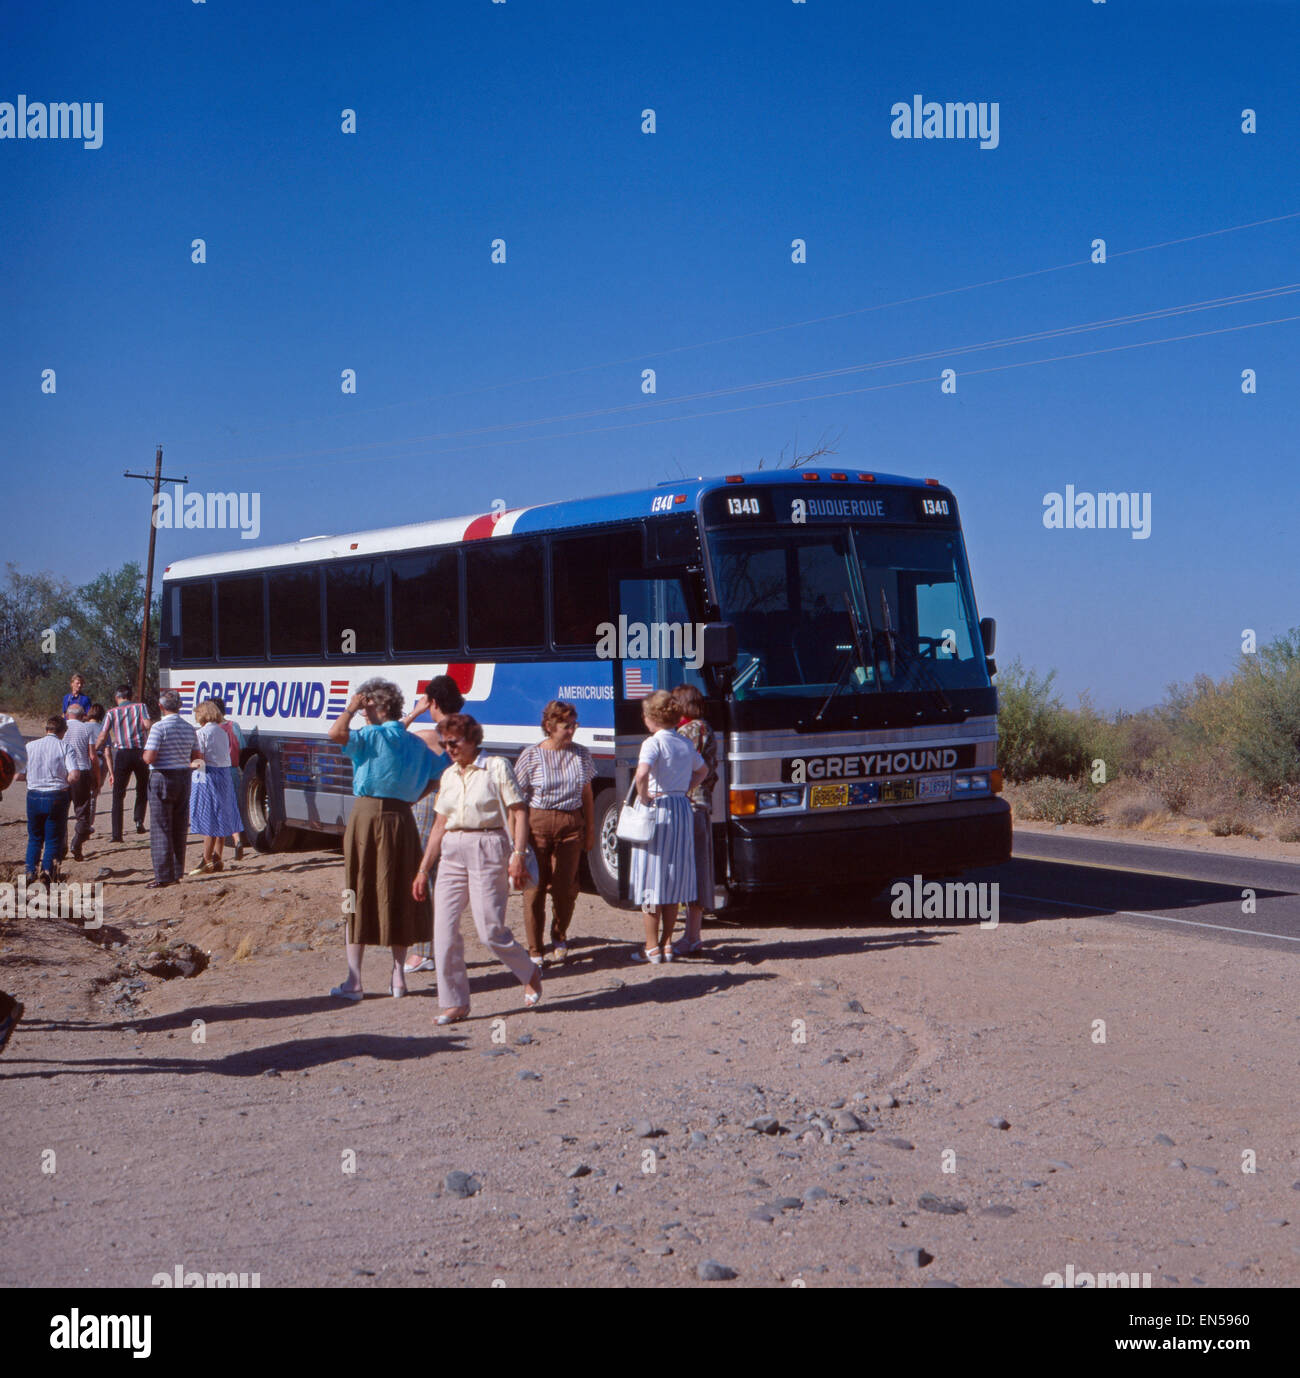 Eine Busrundreise durch Arizona, USA 1970er Jahre. A coach trip through Arizona, US 1970s. Stock Photo